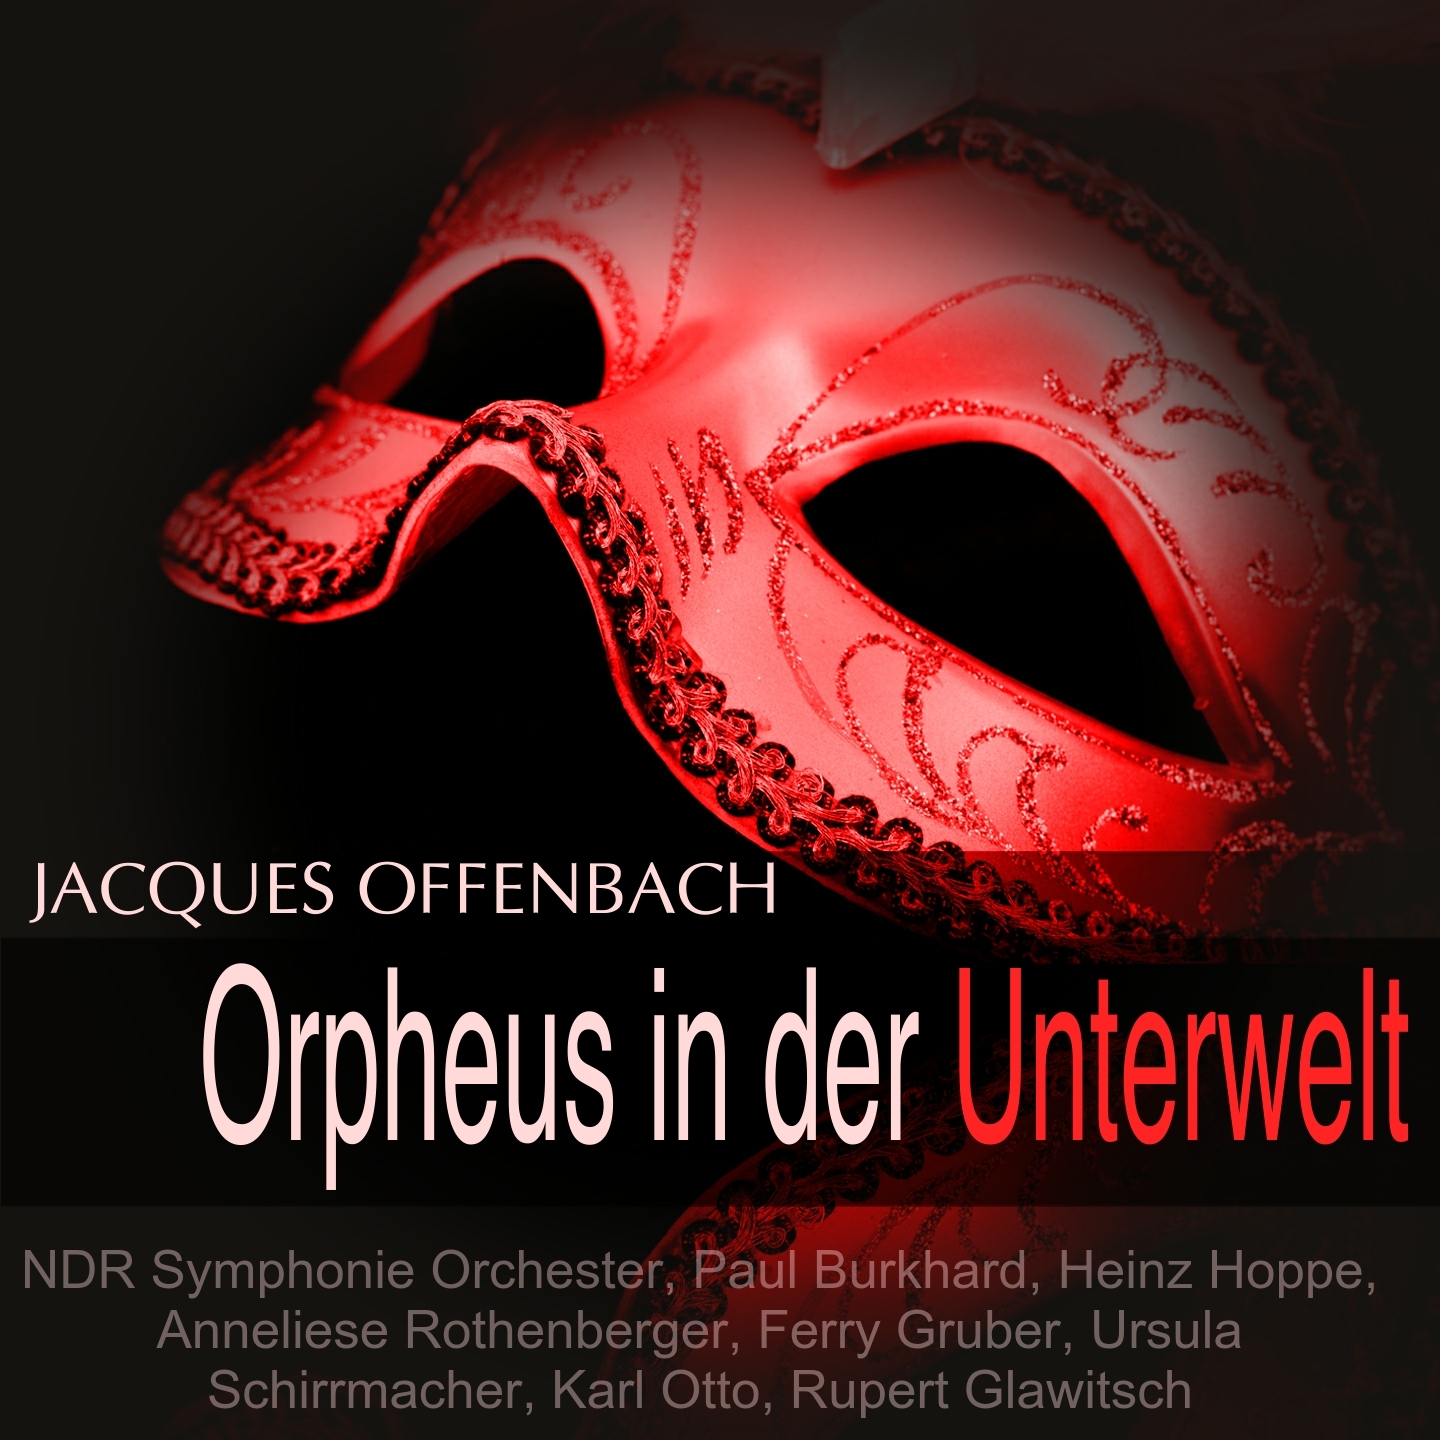 Orpheus in der Unterwelt: "So ist's gemeint" (Eurydike, Orpheus)